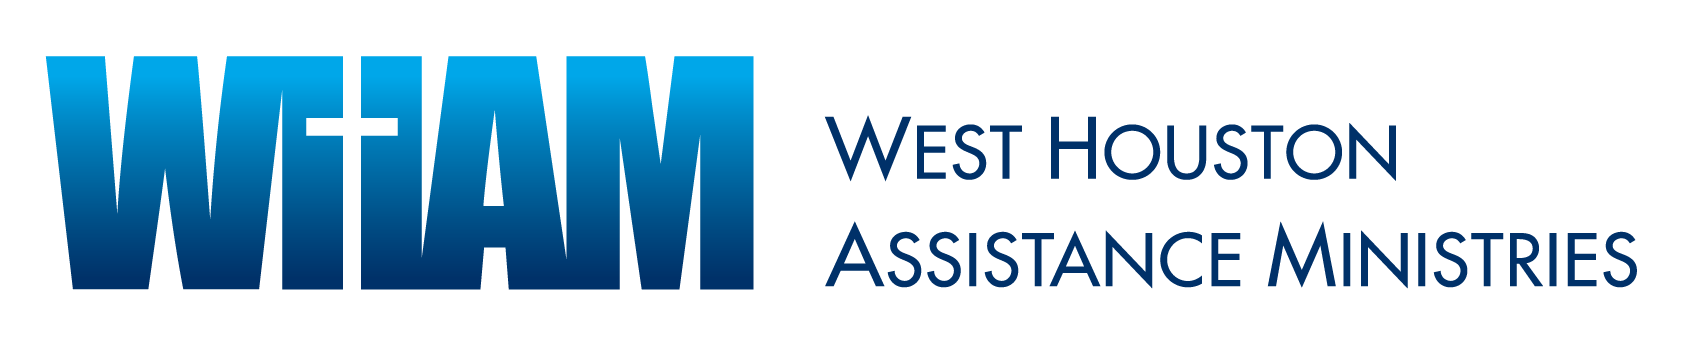 qtUZjDjpIMekk023-west-houston-assistance-ministries